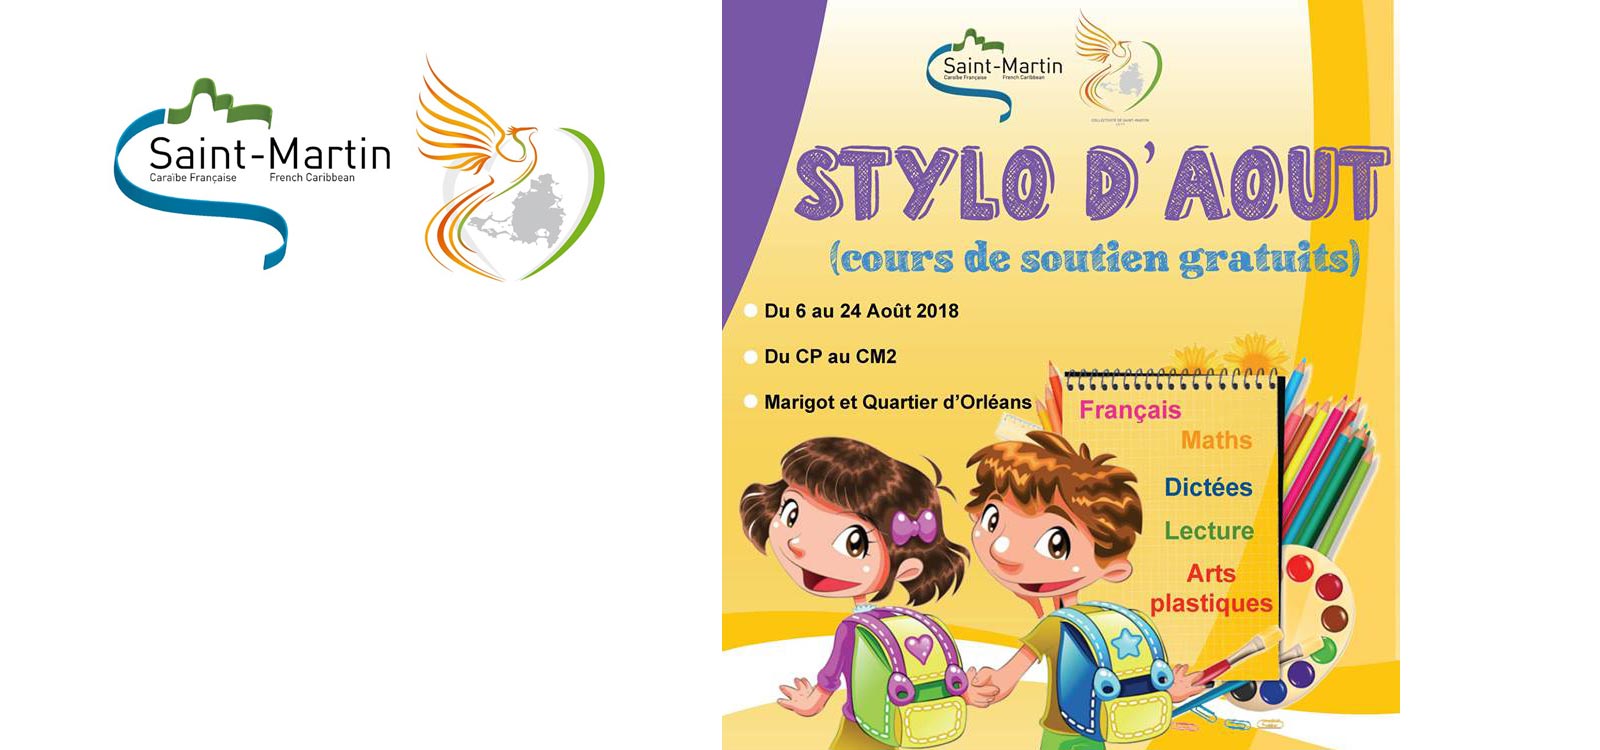 Le Stylo d'aot: Cours de soutien gratuits pour les enfants !